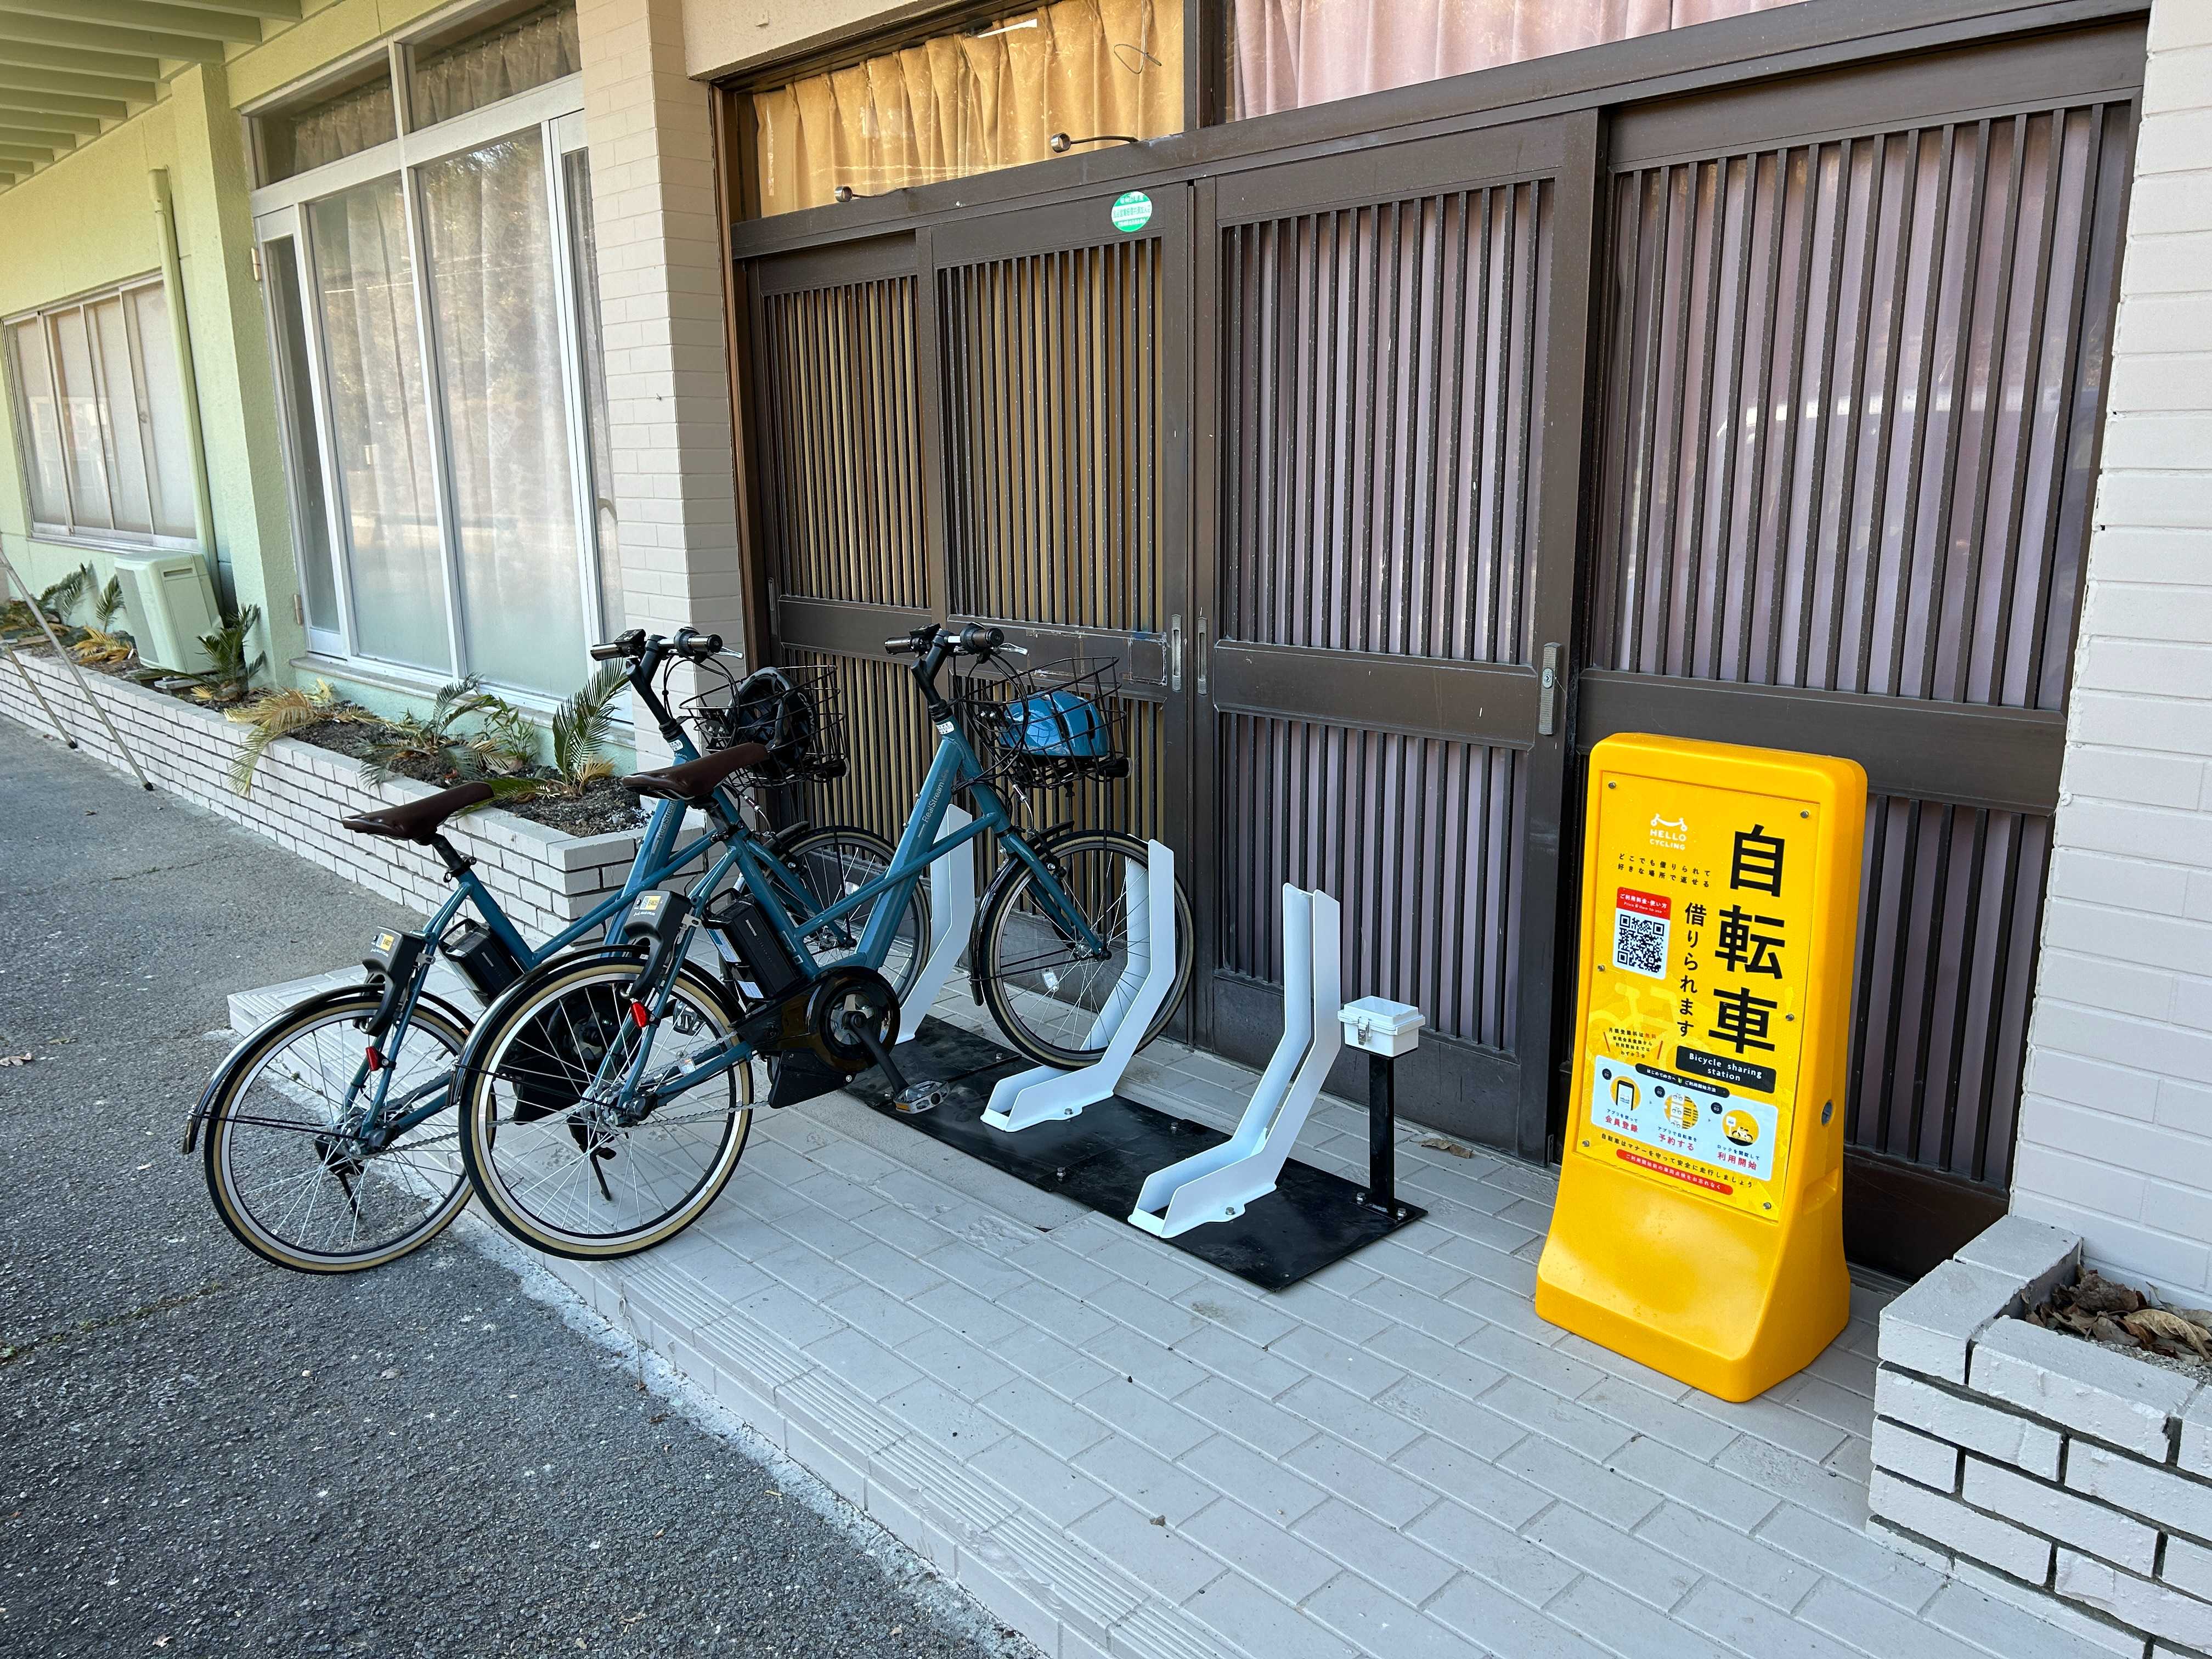 スマート旅館 HANAGURI (HELLO CYCLING ポート)の画像1